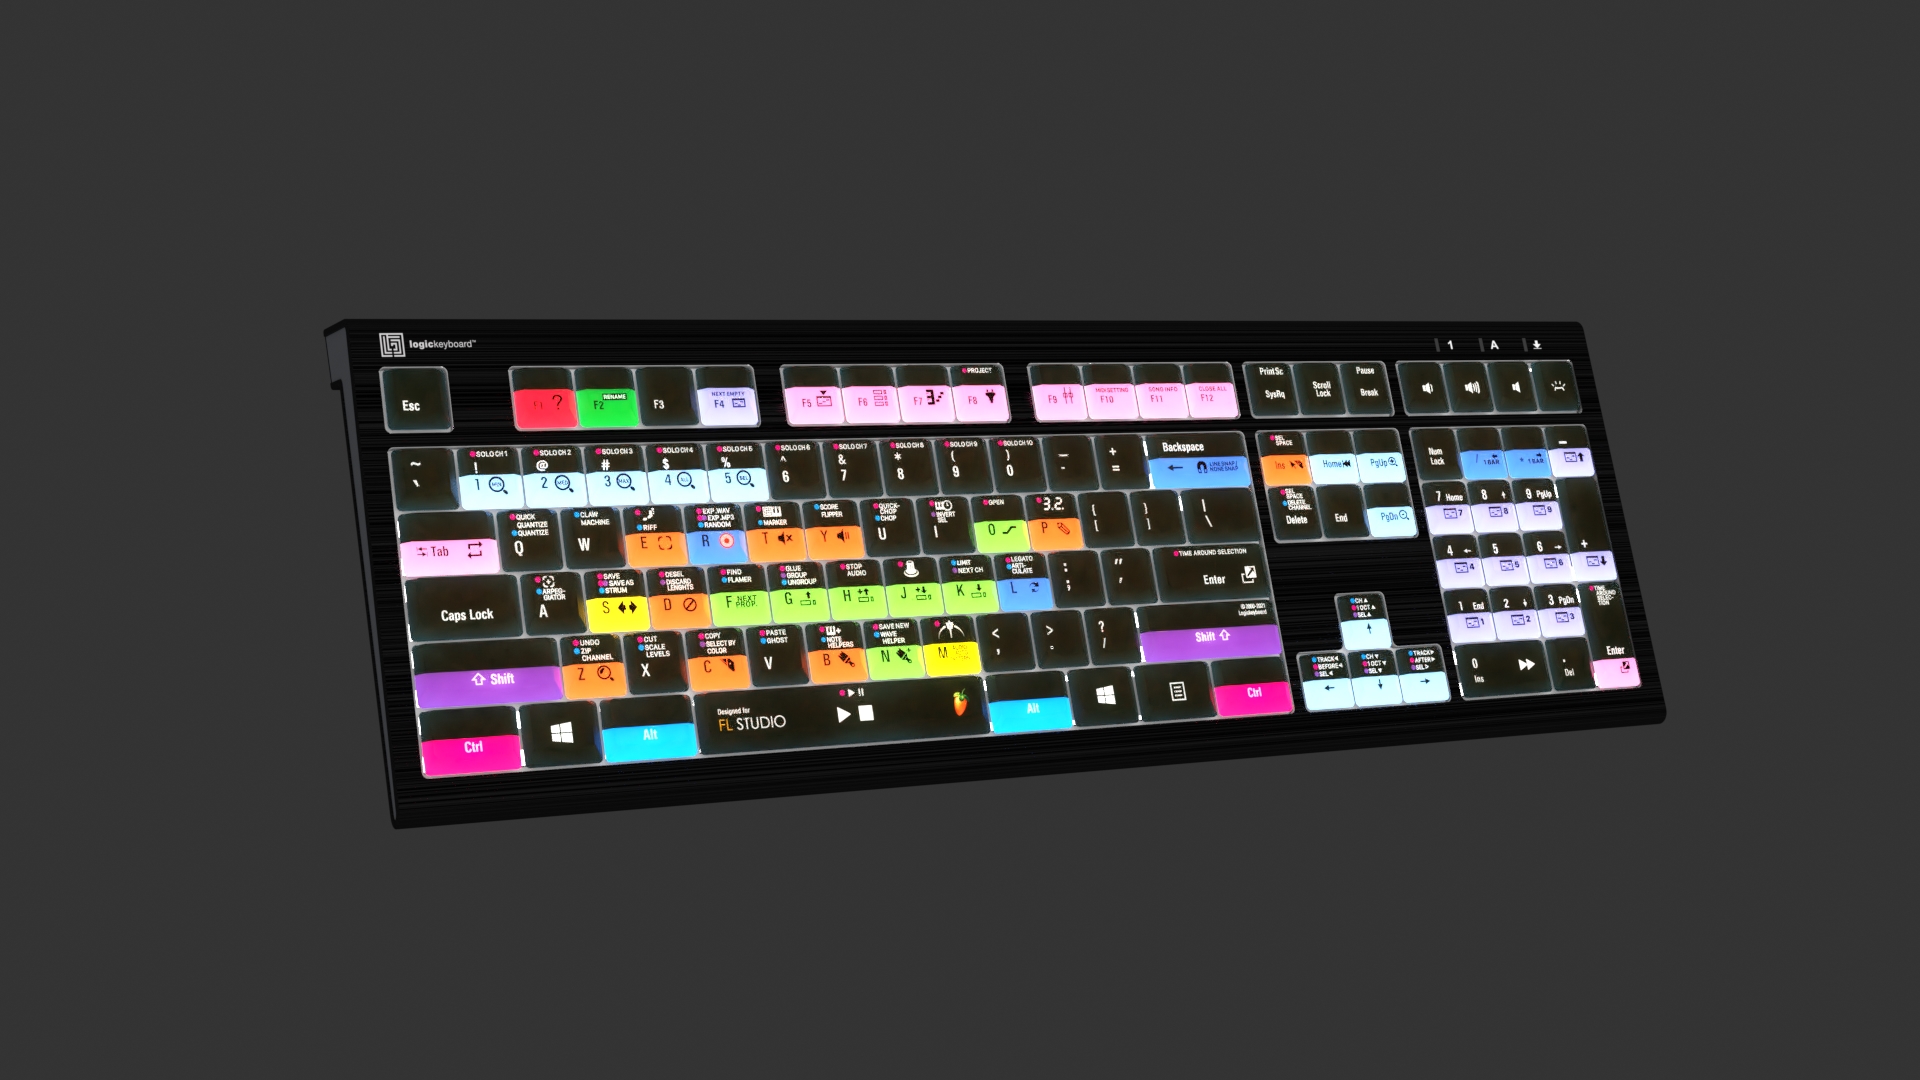 Logickeyboard ASTRA 2 Backlit Keyboard for FL LKB-FLS-A2M-US B&H